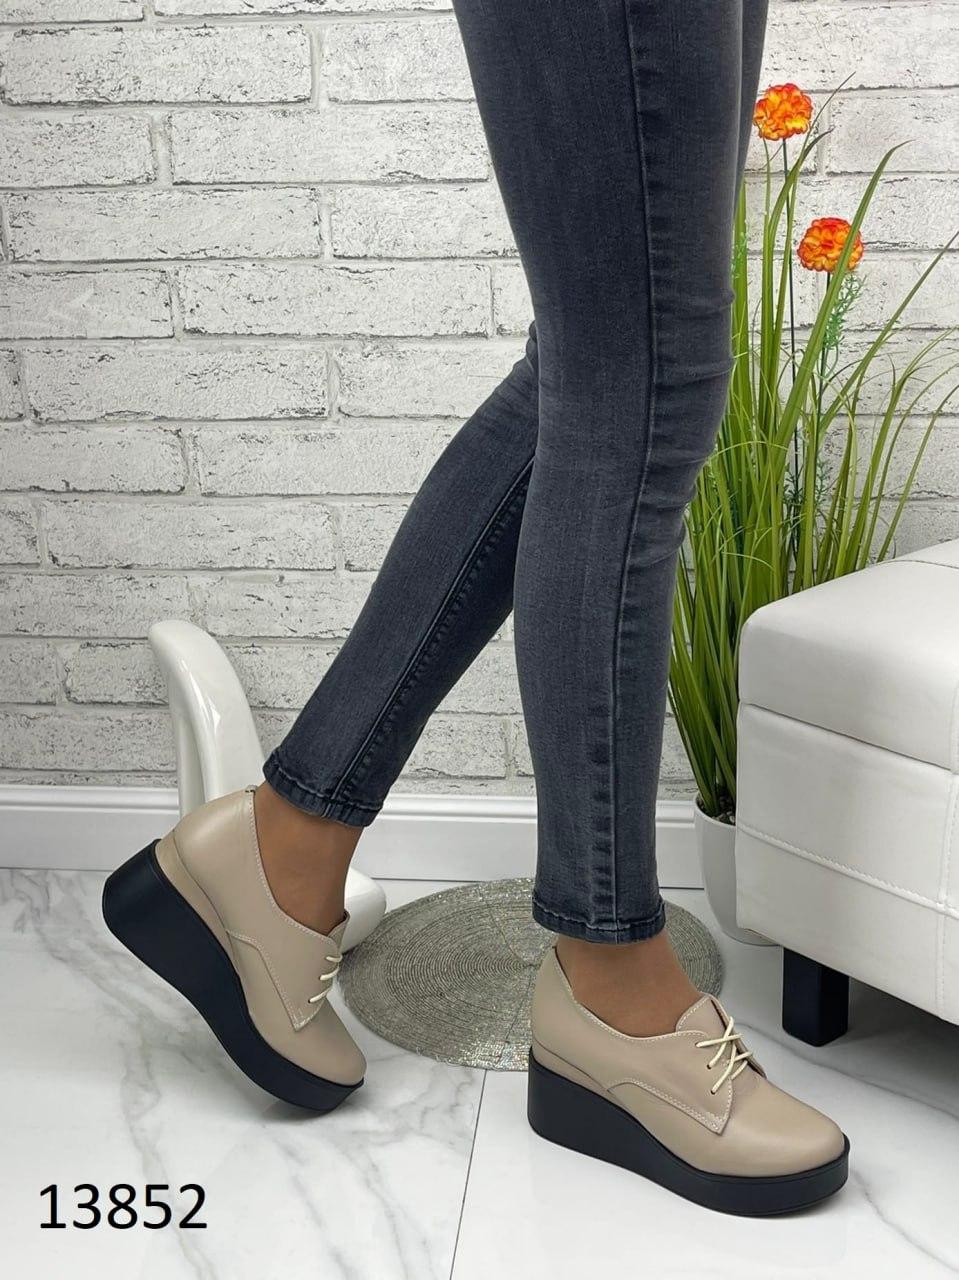 Жіночі черевики Zara, натуральна шкіра, в кольорі мокко.